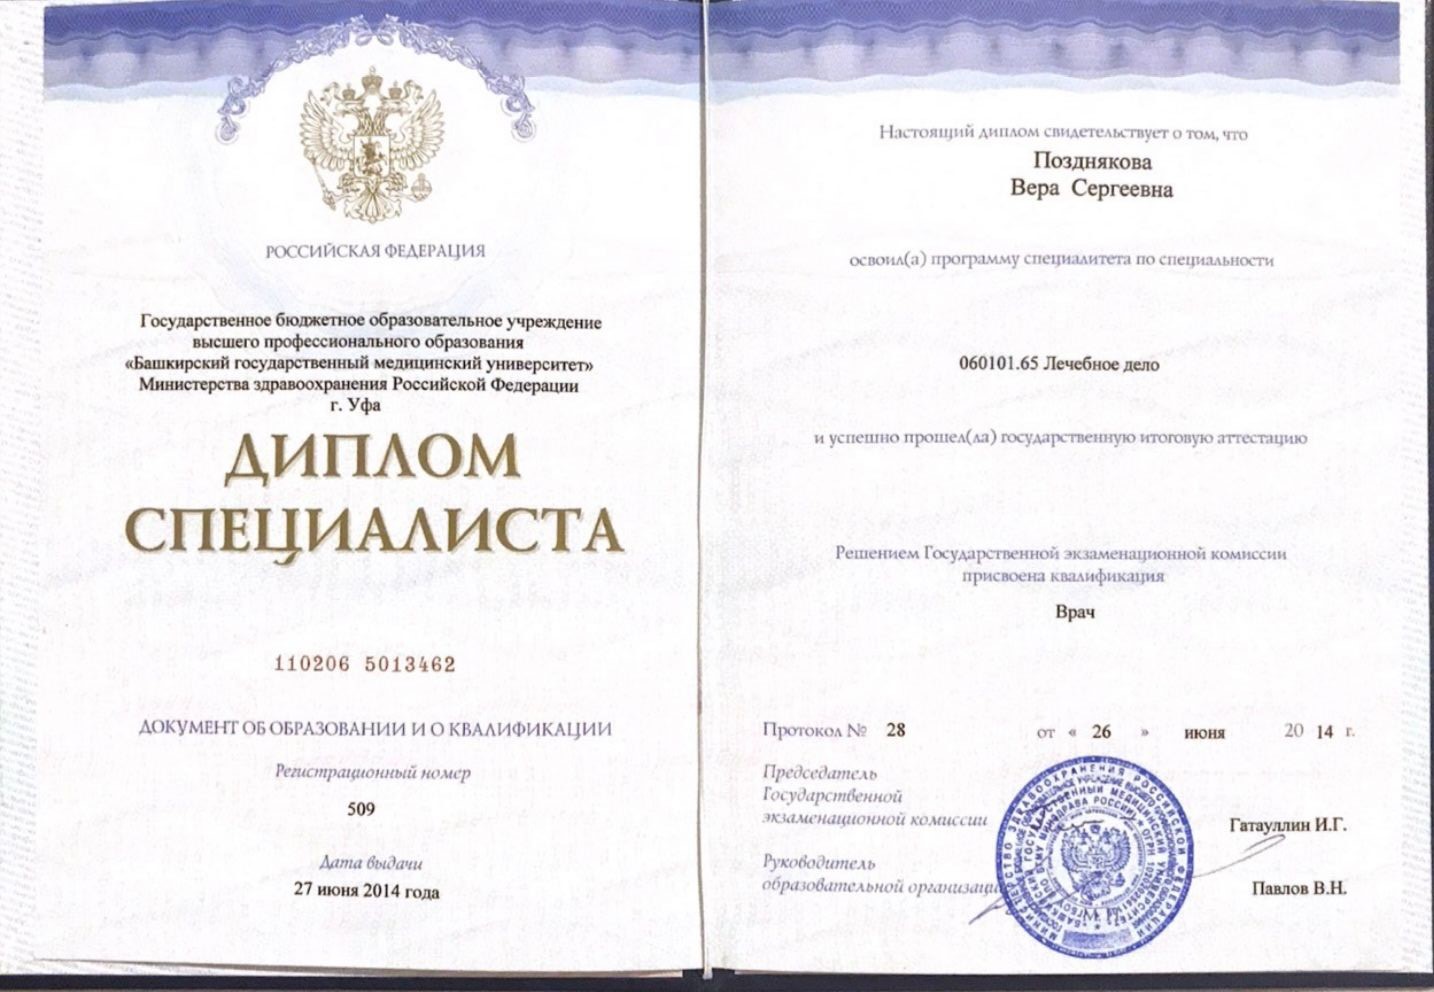 Сертификат Поздняковой Веры